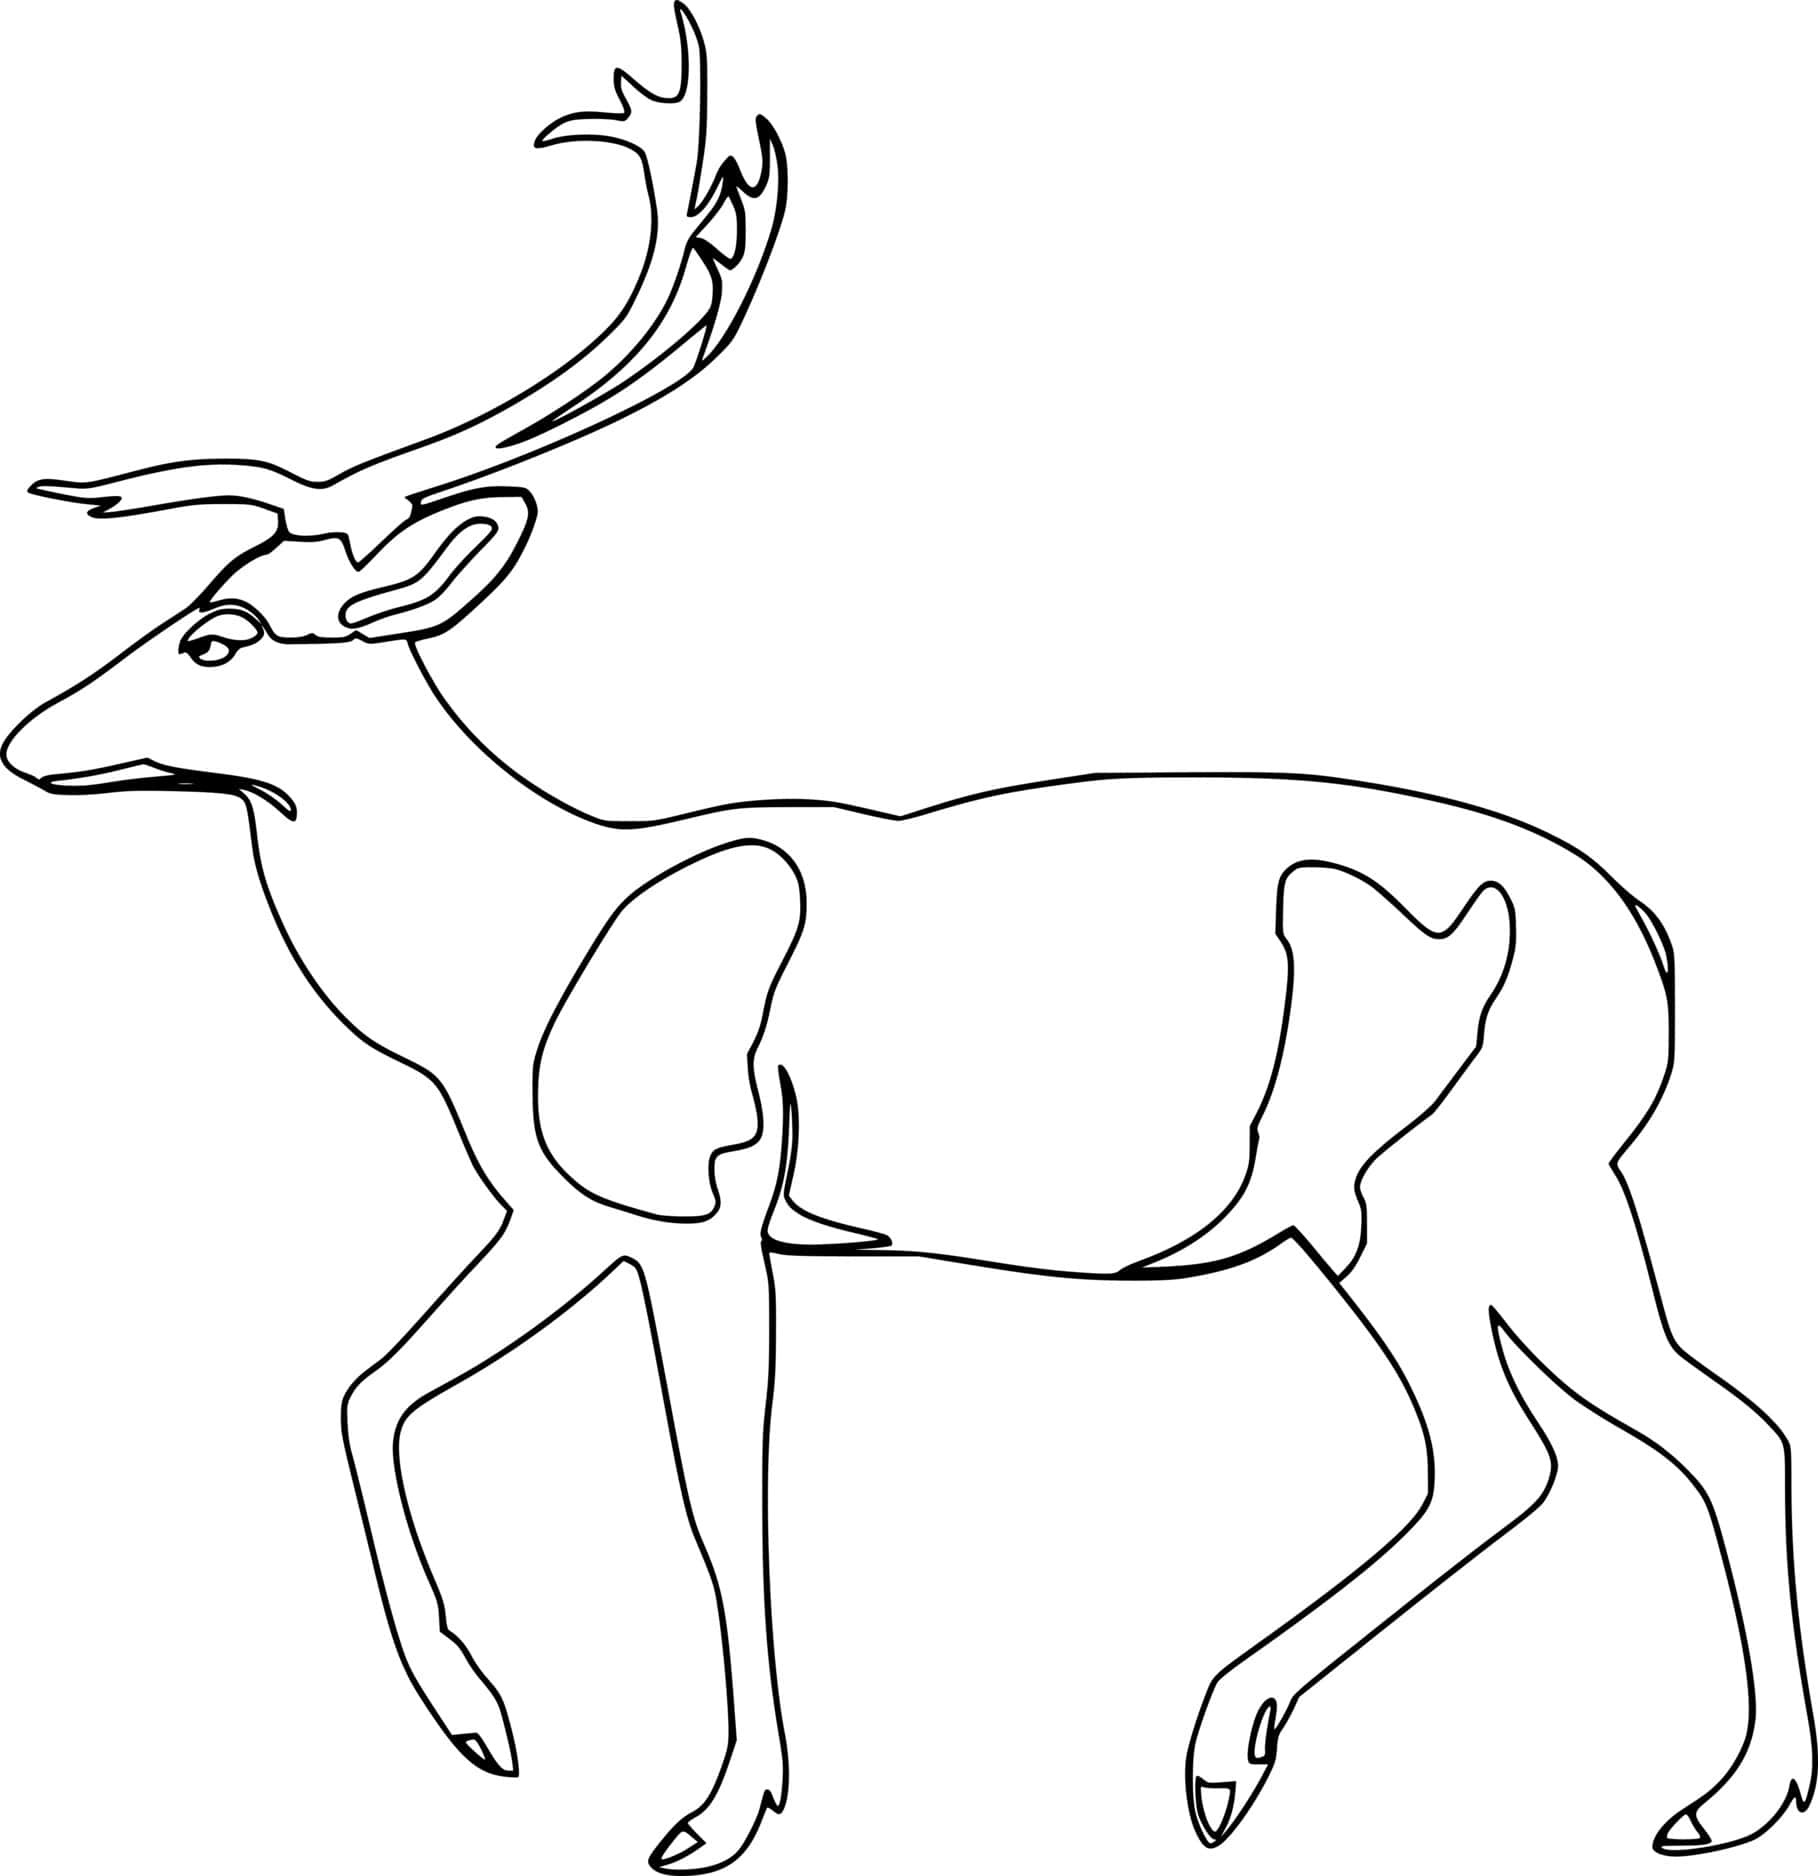 Walking Easy Deer Coloring Page